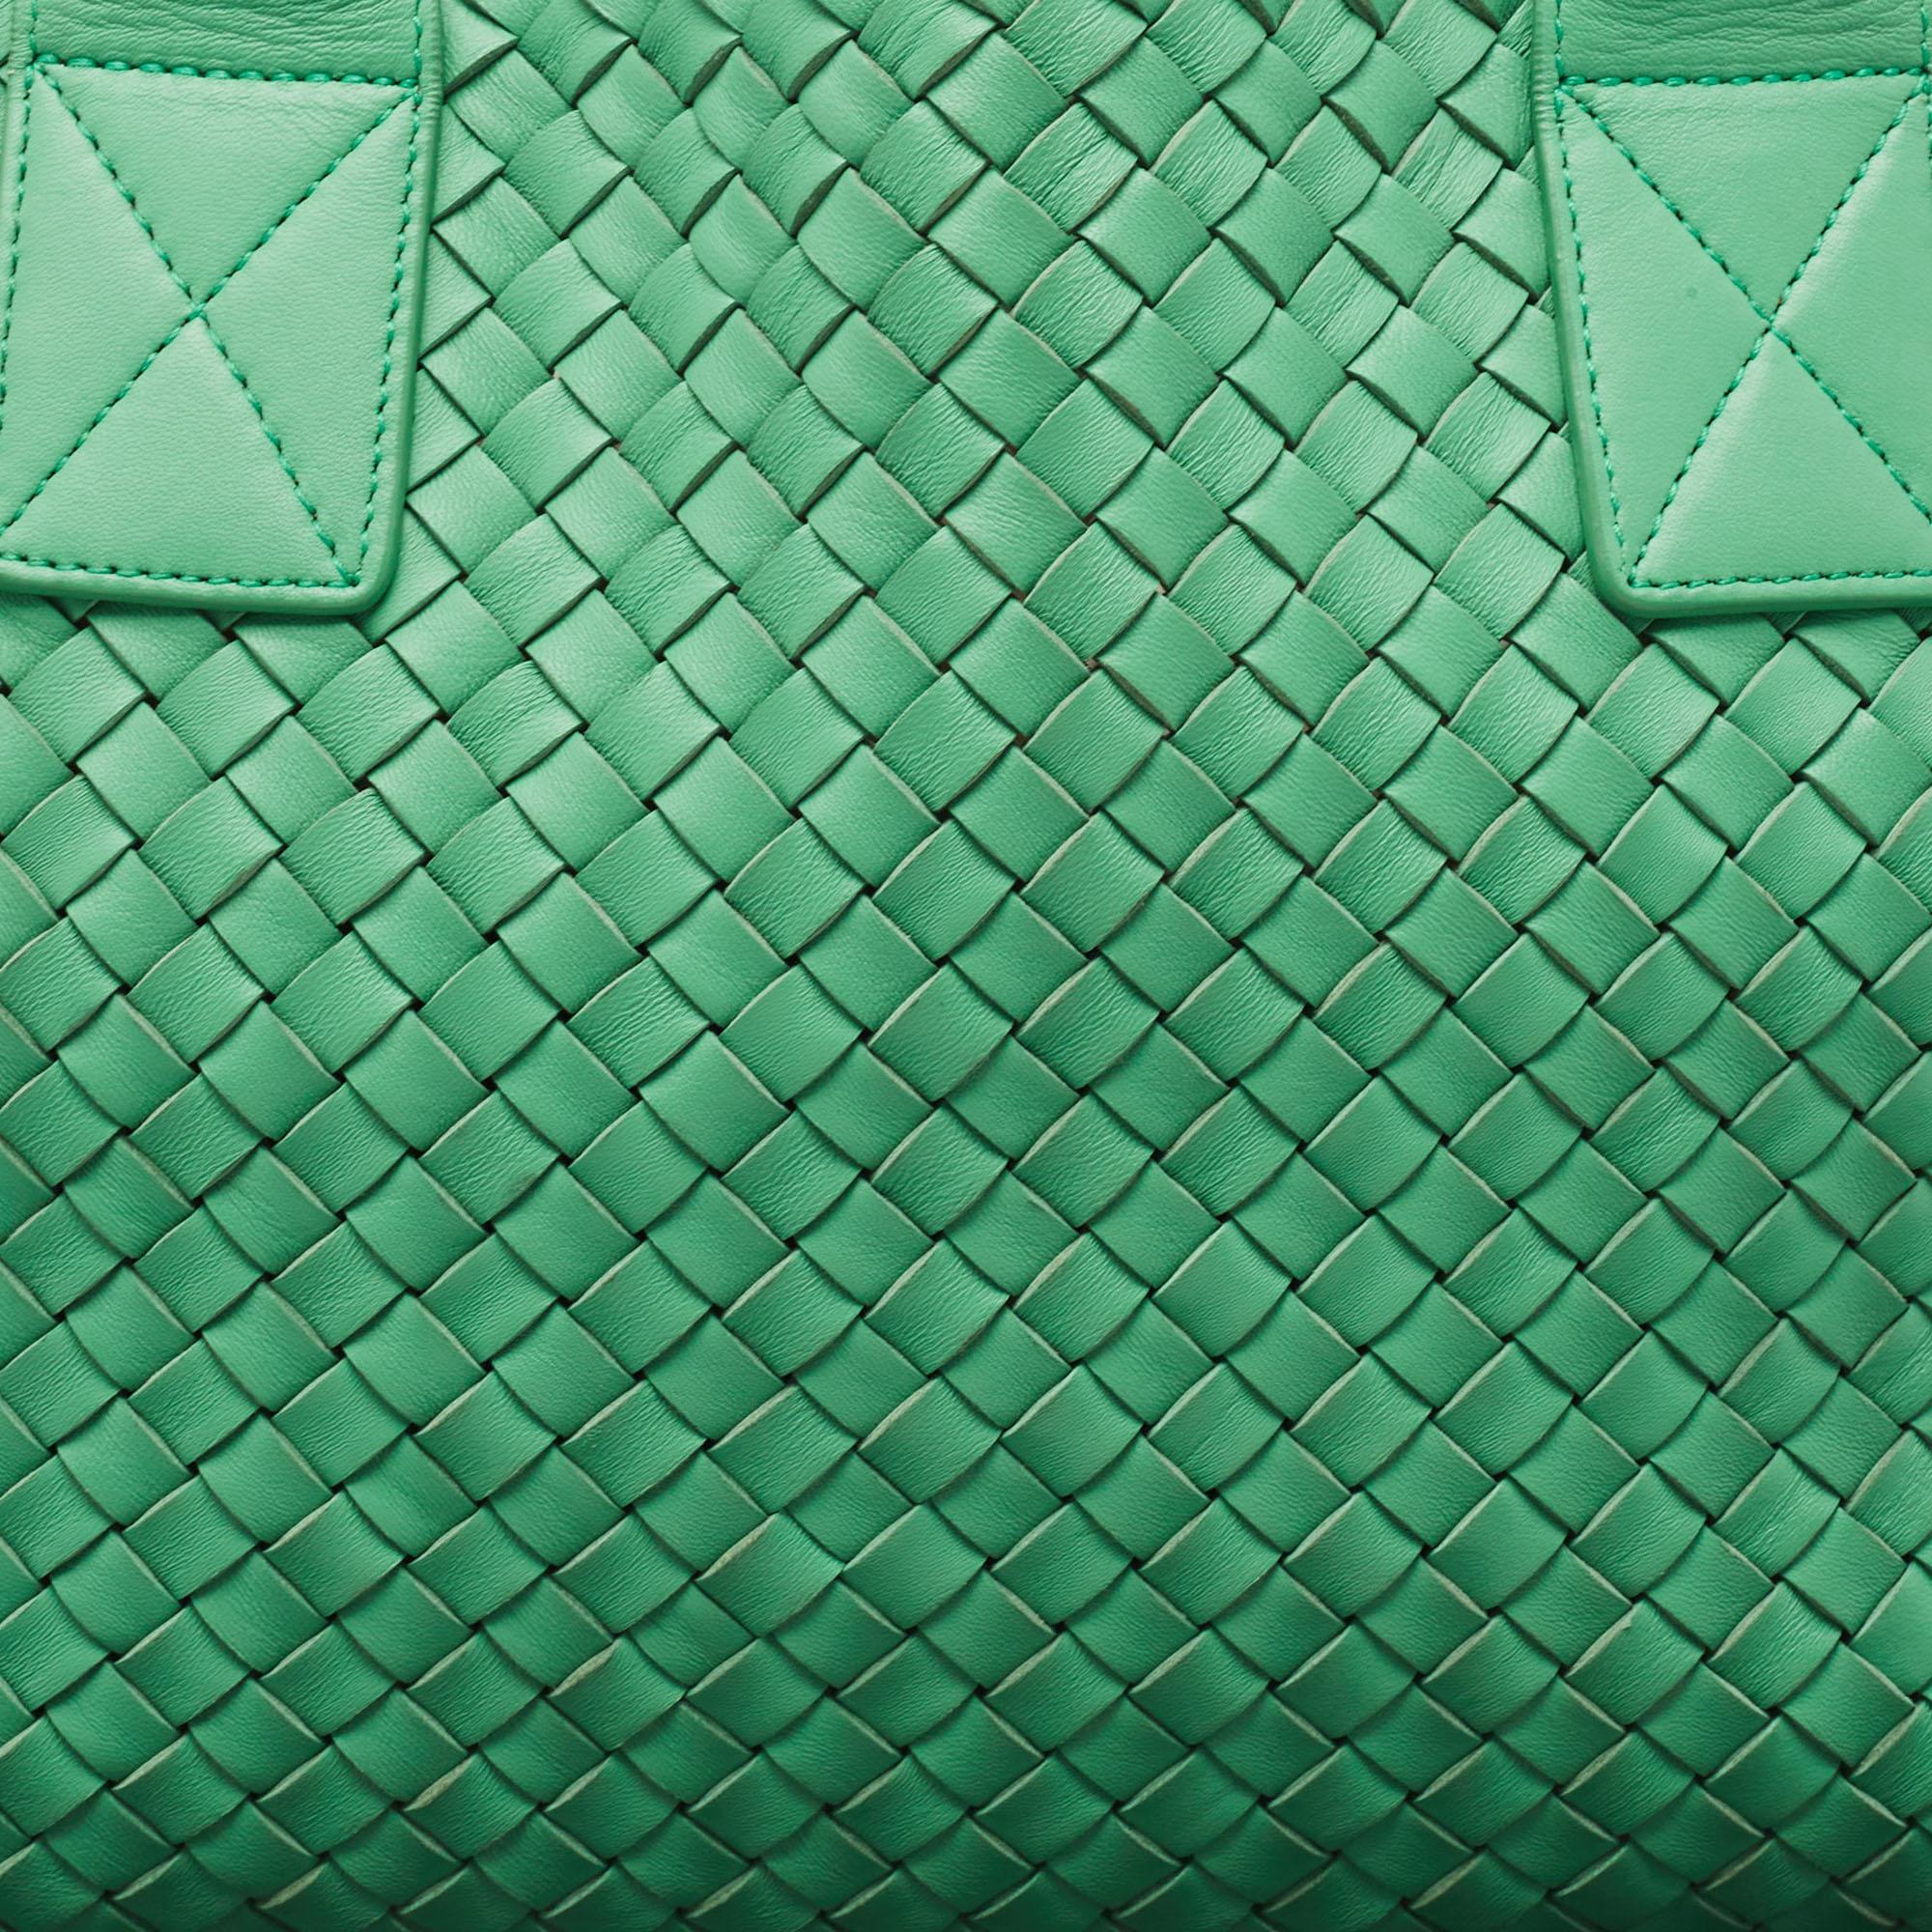 Bottega Veneta Green Intrecciato Leather  Limited Edition 0147/1000 Cabat Tote For Sale 9